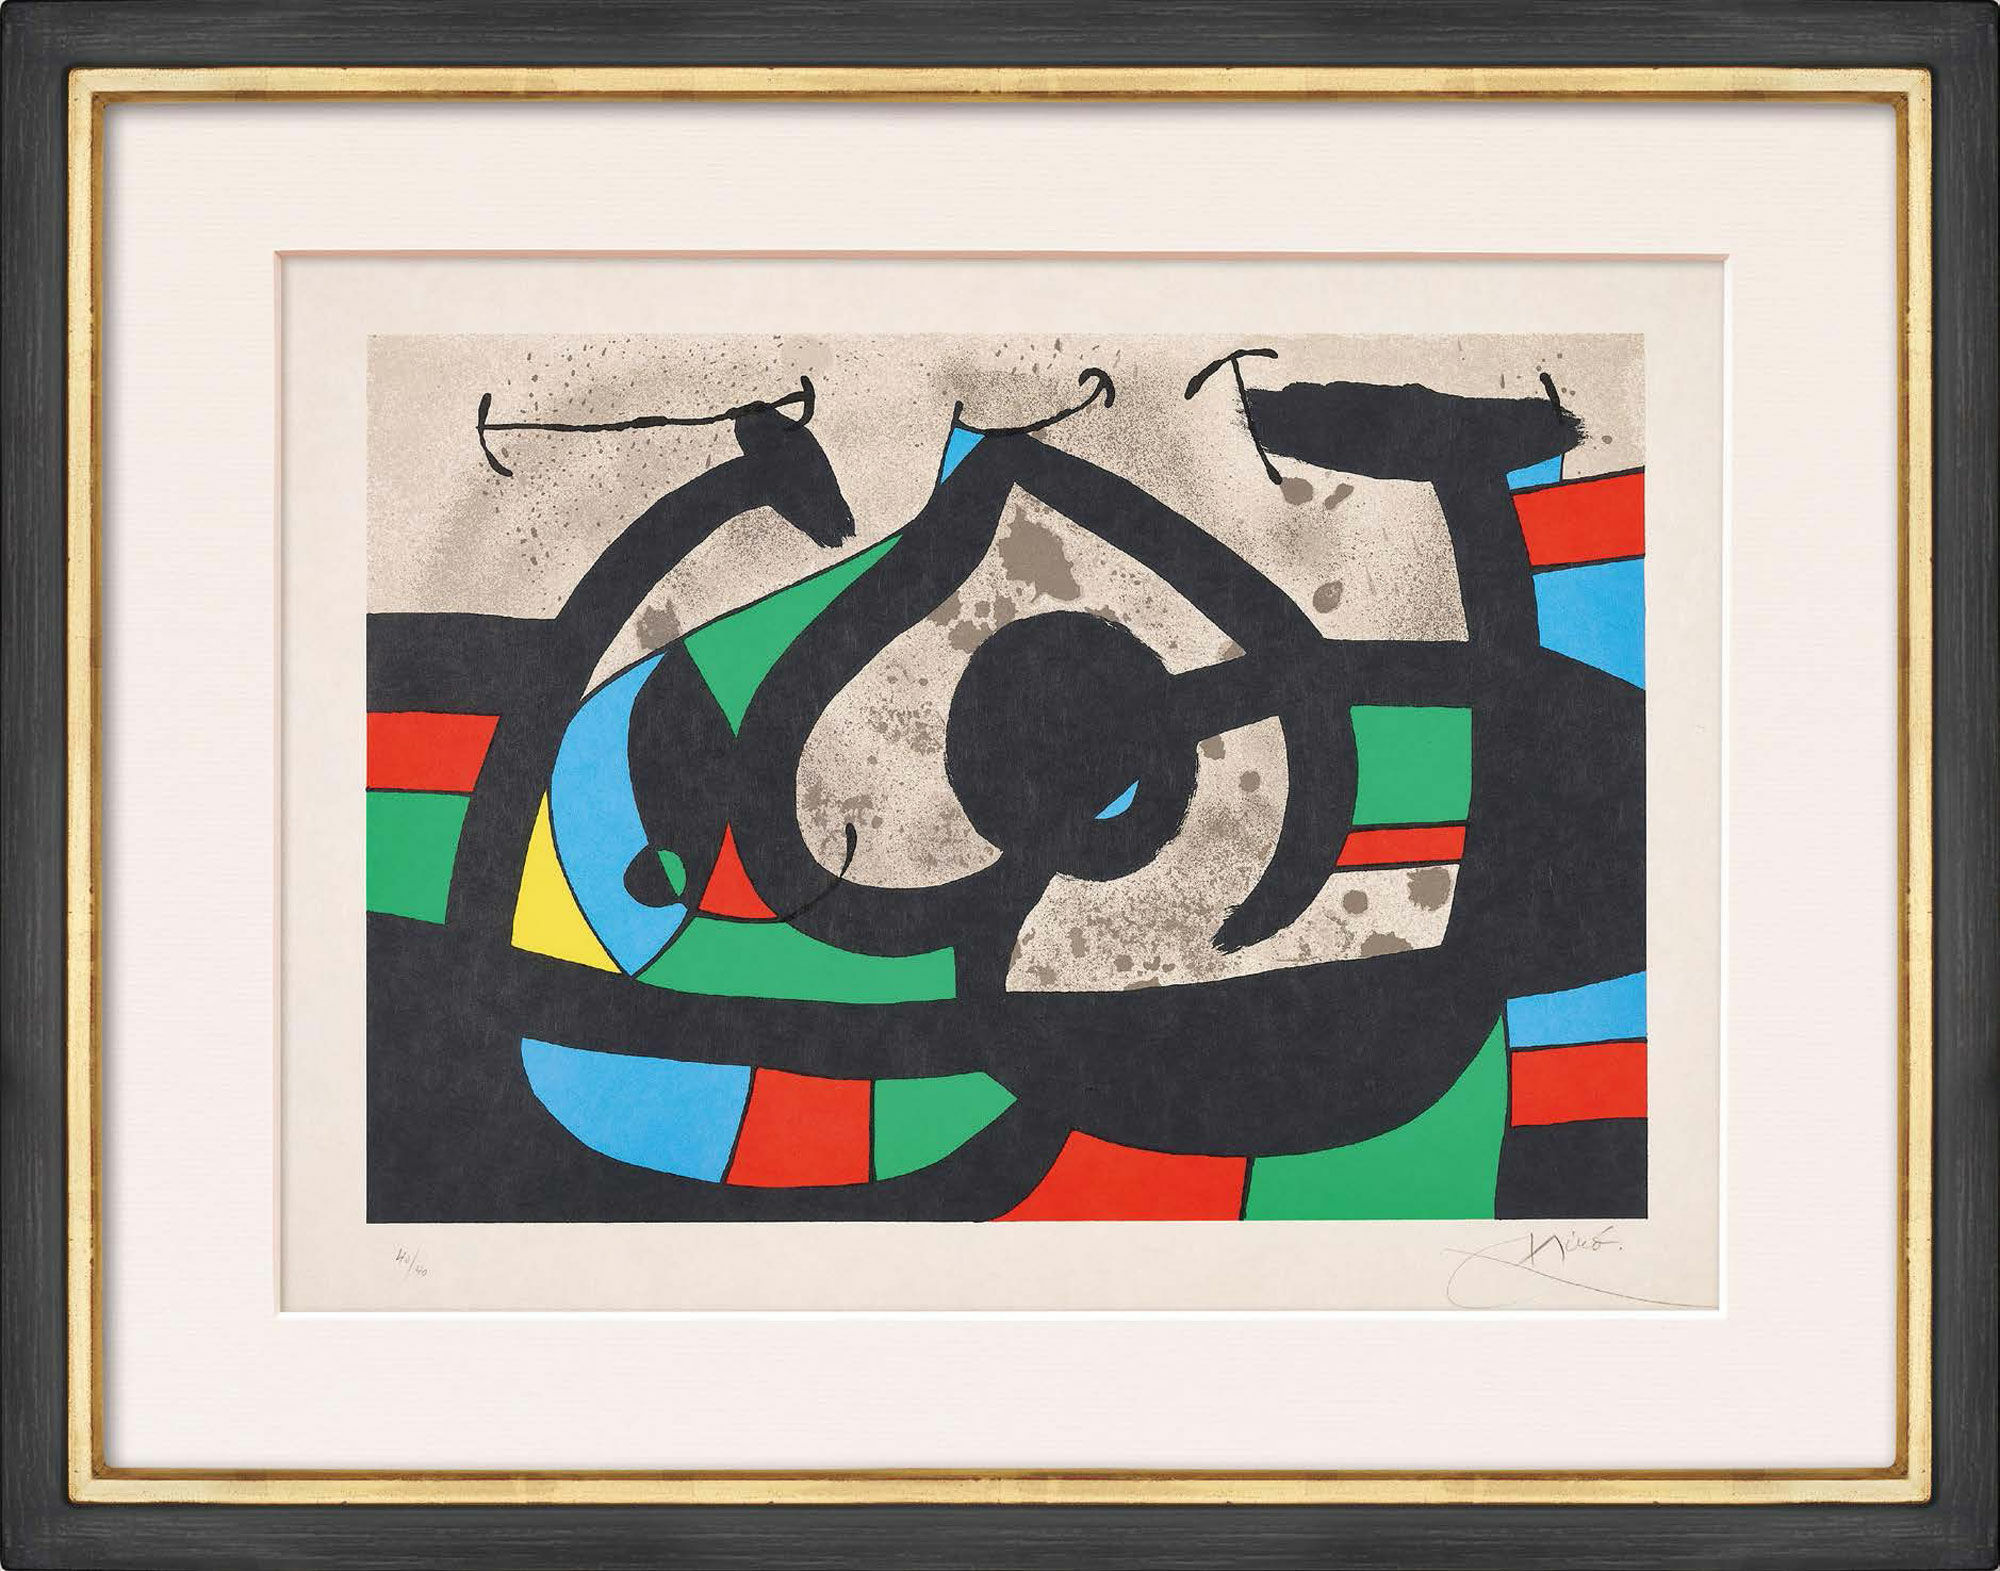 Beeld "Le lézard aux plumes d'or" (1971) von Joan Miró